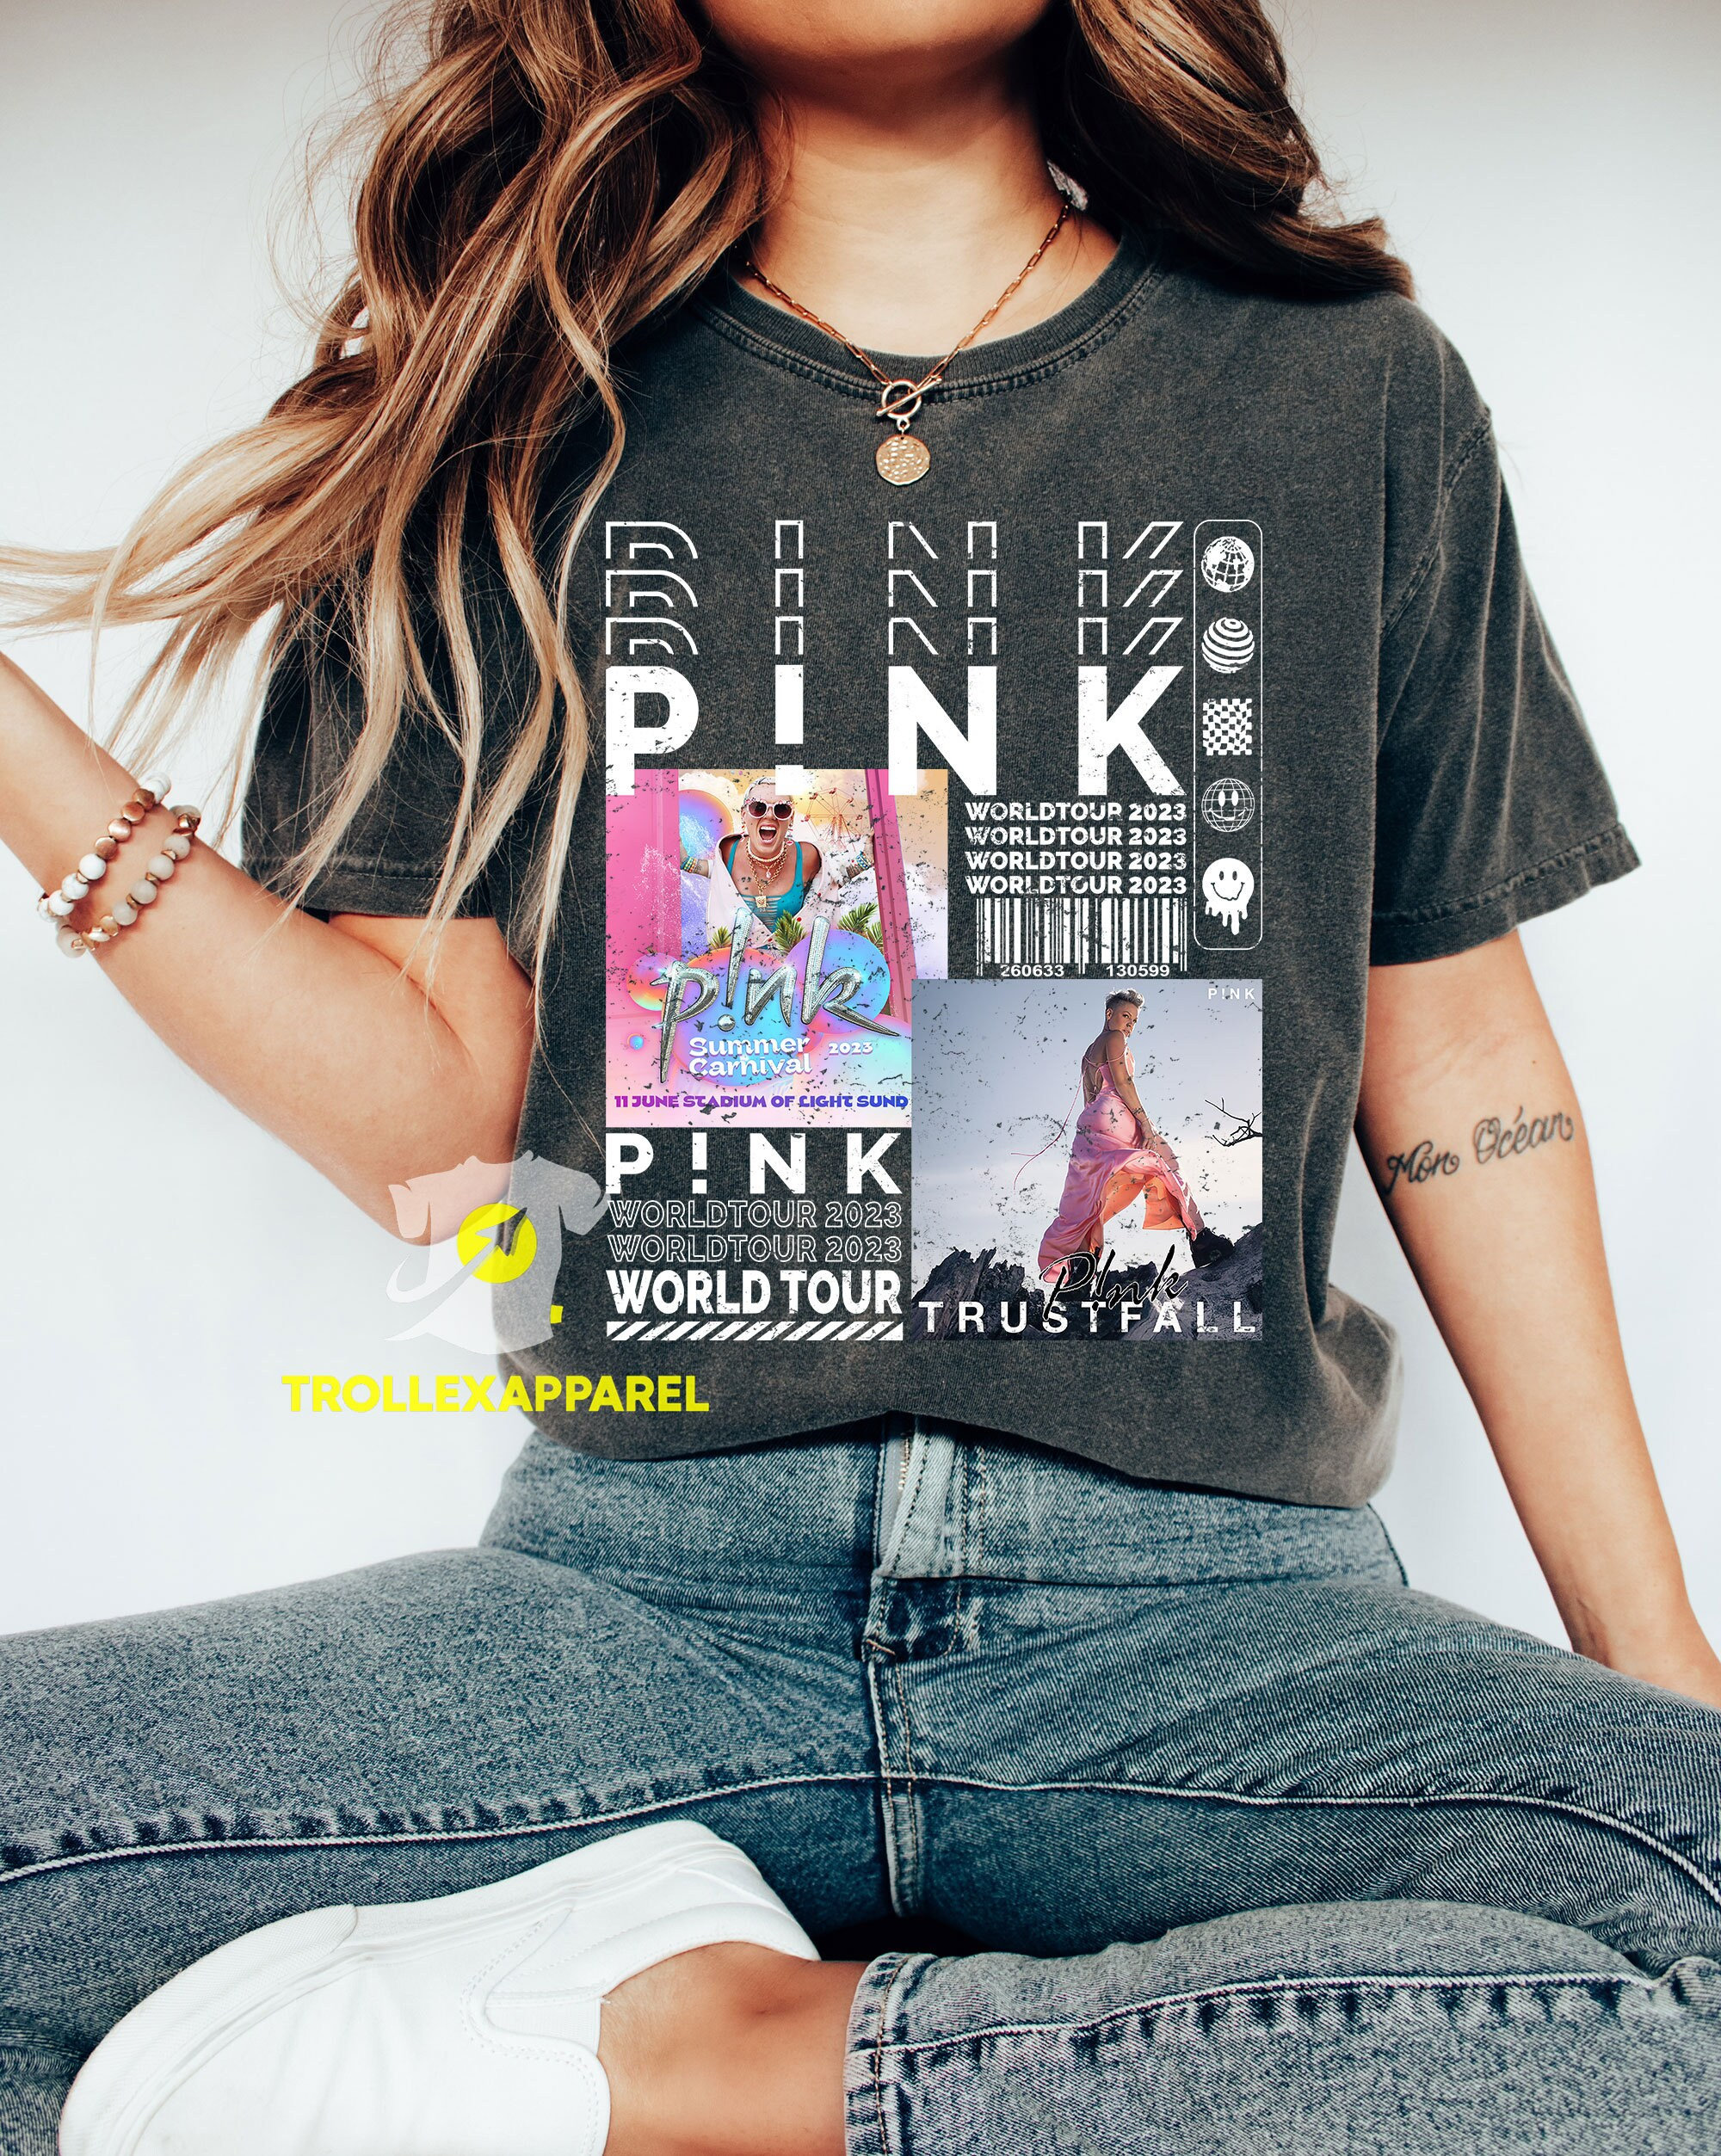 Pink Singer Shirt, Summer Carnival Trustfall Tour 2023 Tour T-Shirt, Music  Festival Shirt for Mens Womens (Add New Date)